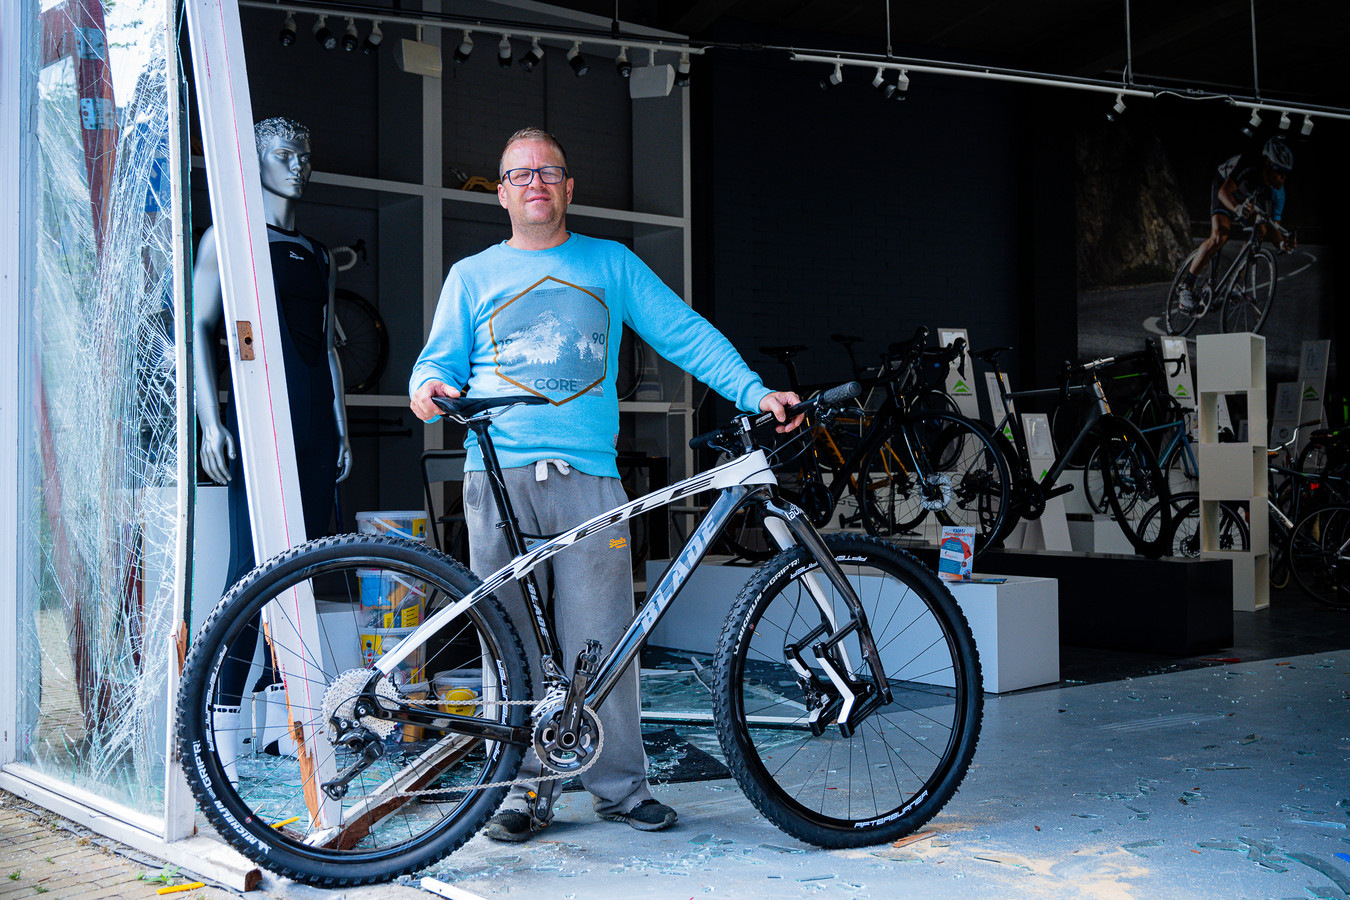 opvoeder Bloesem titel Eigenaar Blade Bikes verbouwereerd na ramkraak op fietsenwinkel: 'Ik snap  niet waarom iemand dit zou doen' | Foto | bd.nl